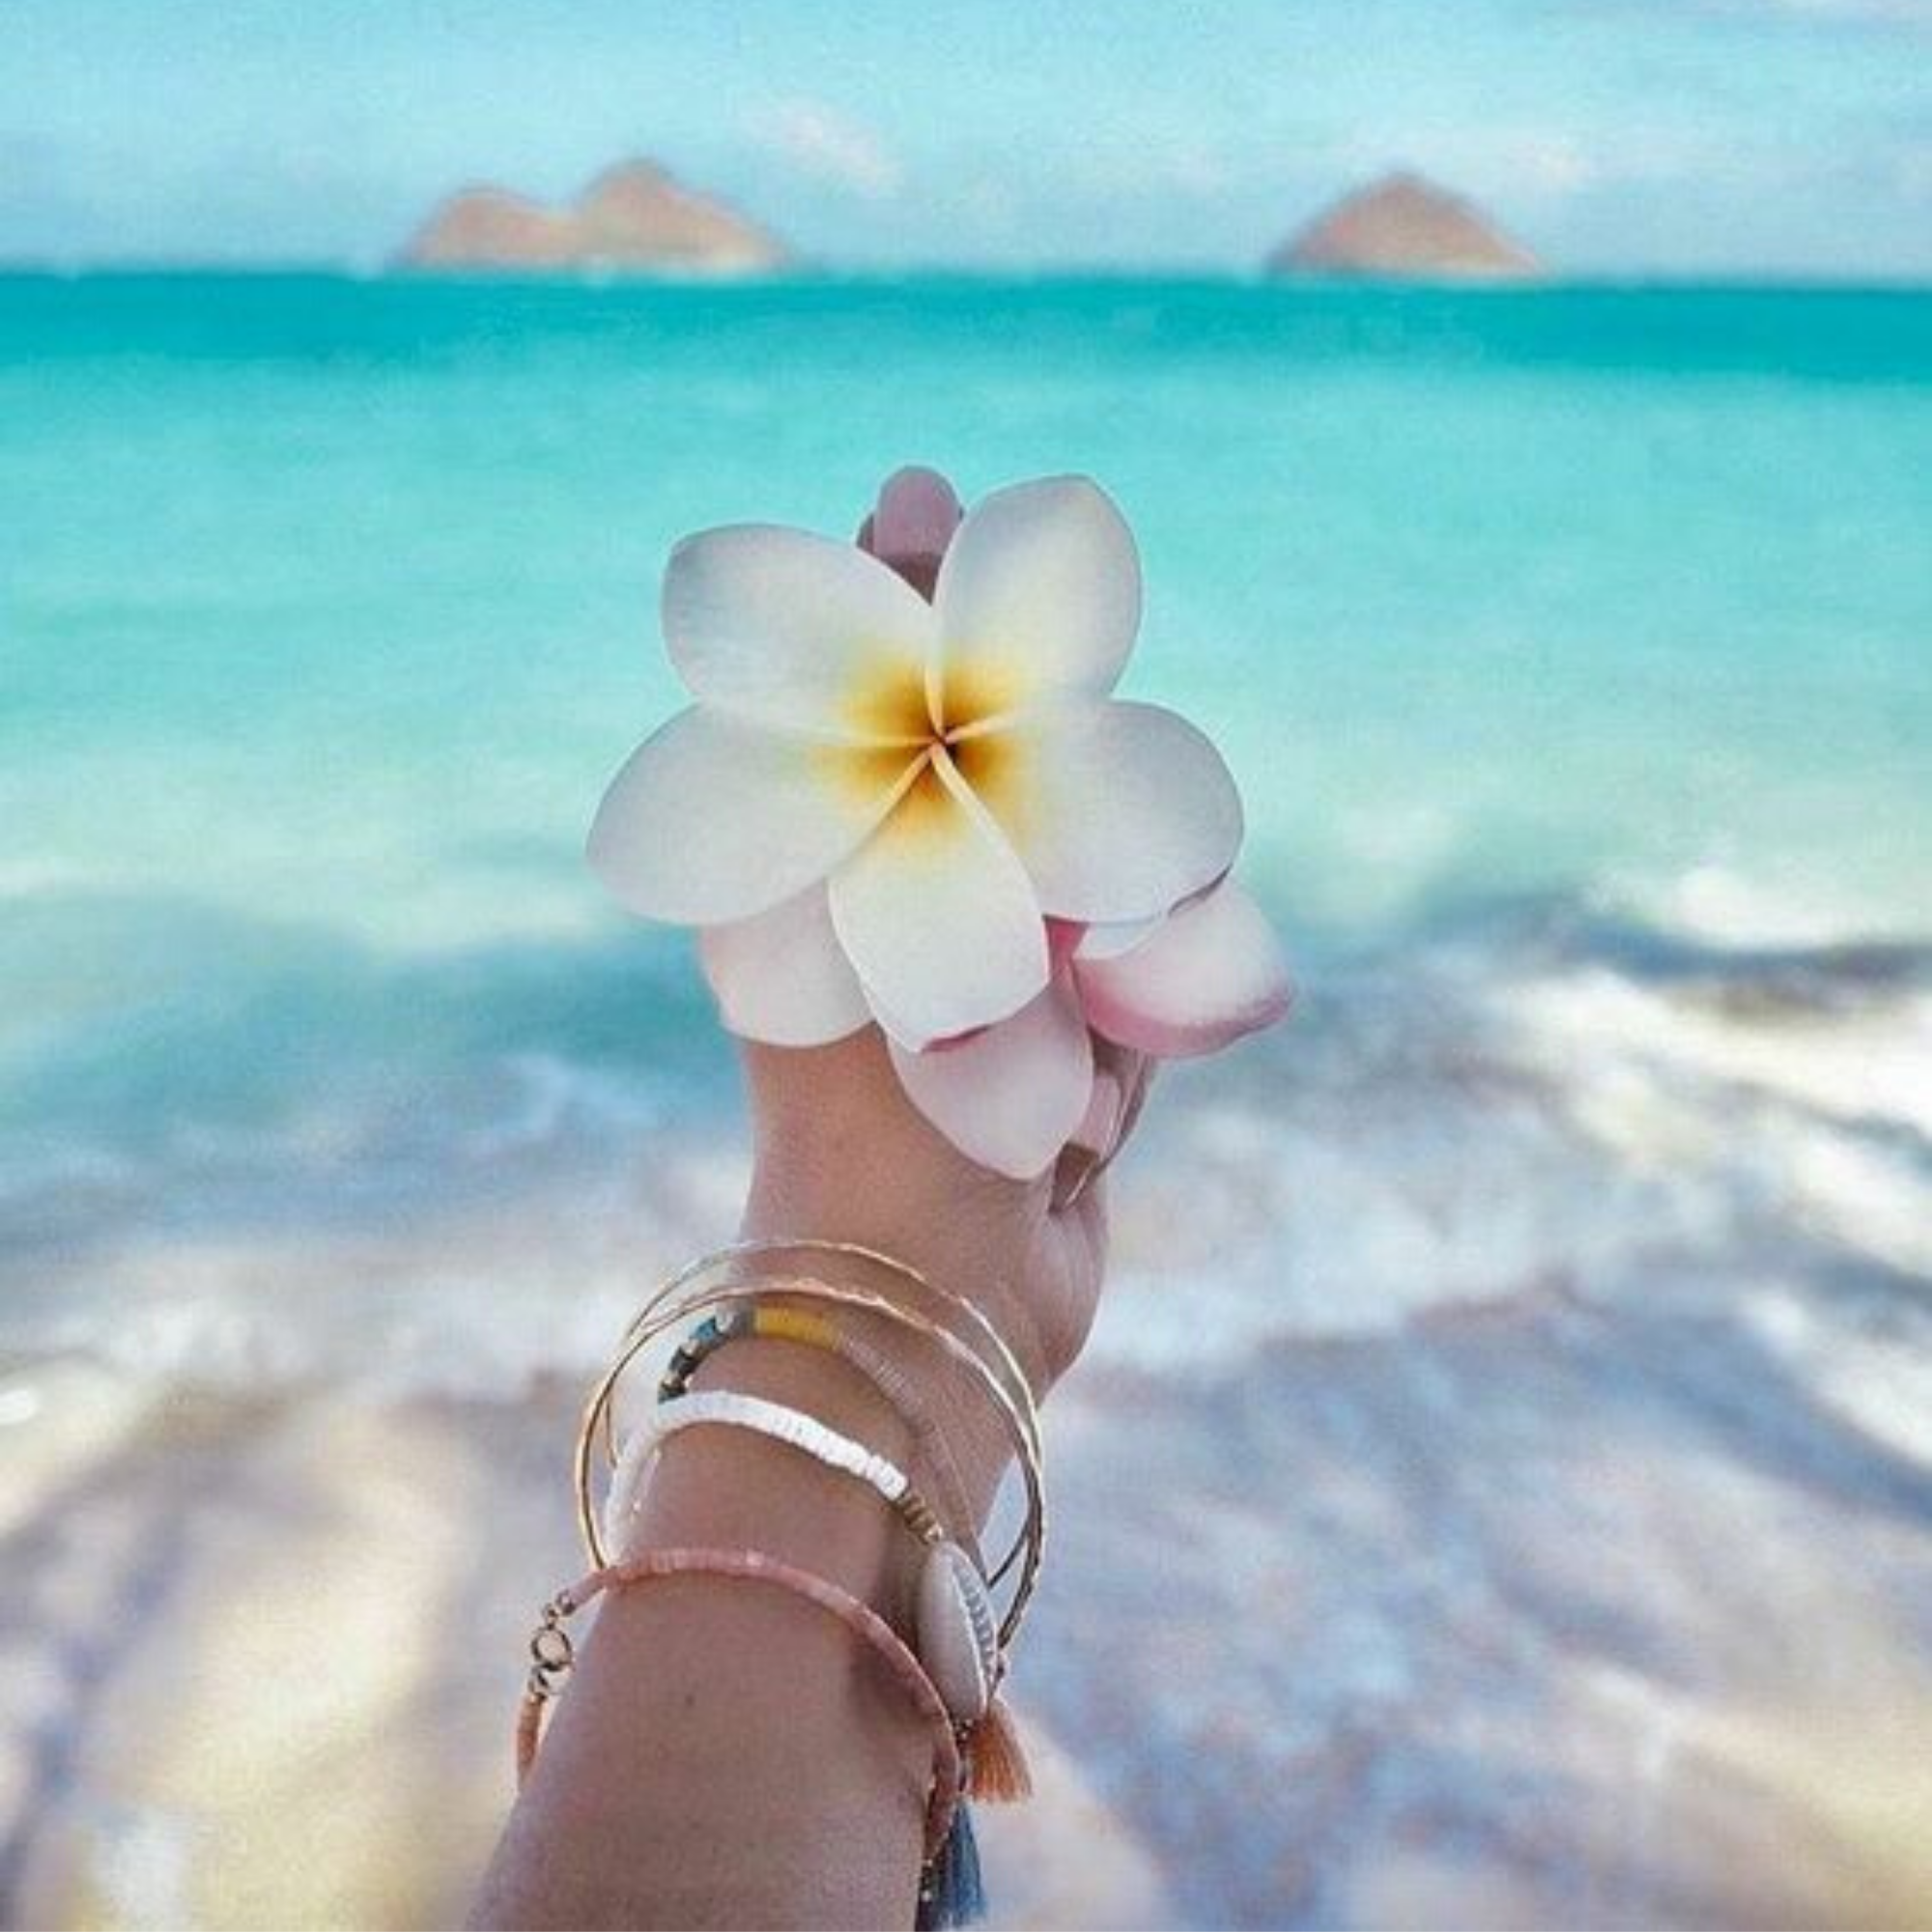 Вацап морской. Цветы и море. Цветочек на фоне моря. Море пляж цветы. Нежные цветы и море.